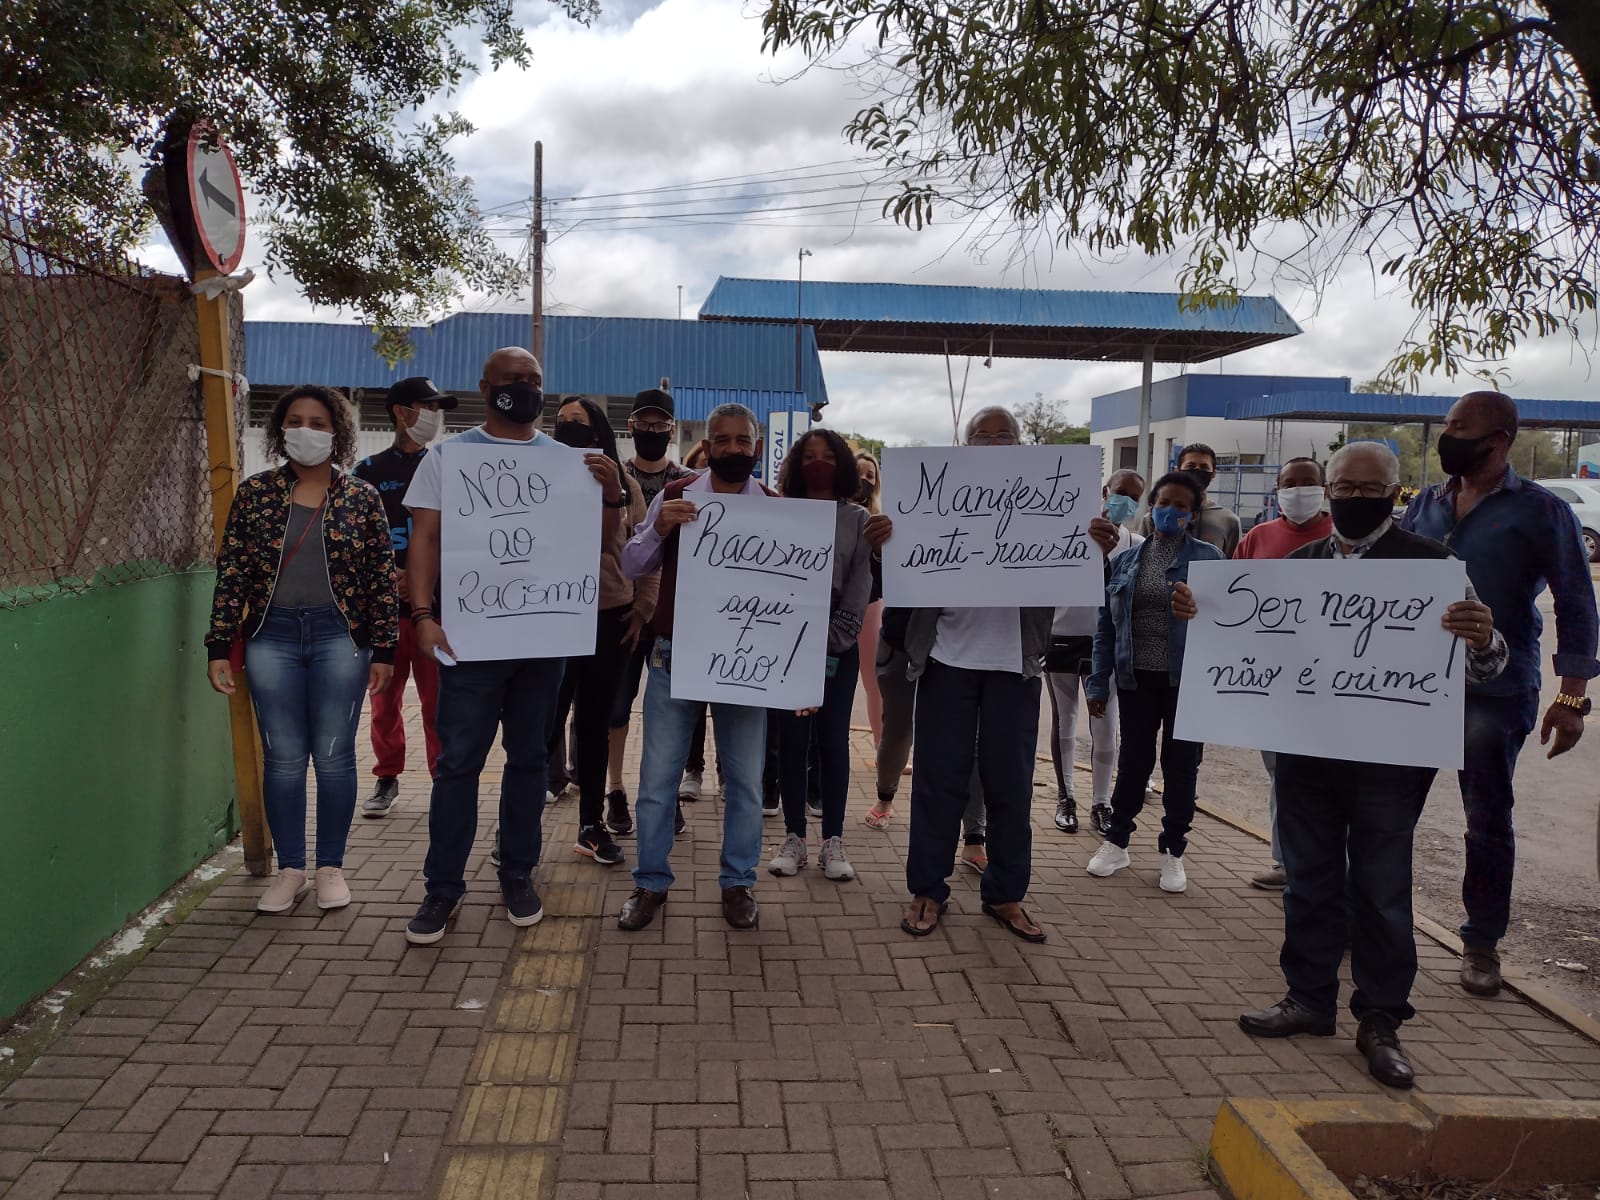 Protesto contra o racismo é registrado na sede da Transcal após falsa acusação de roubo